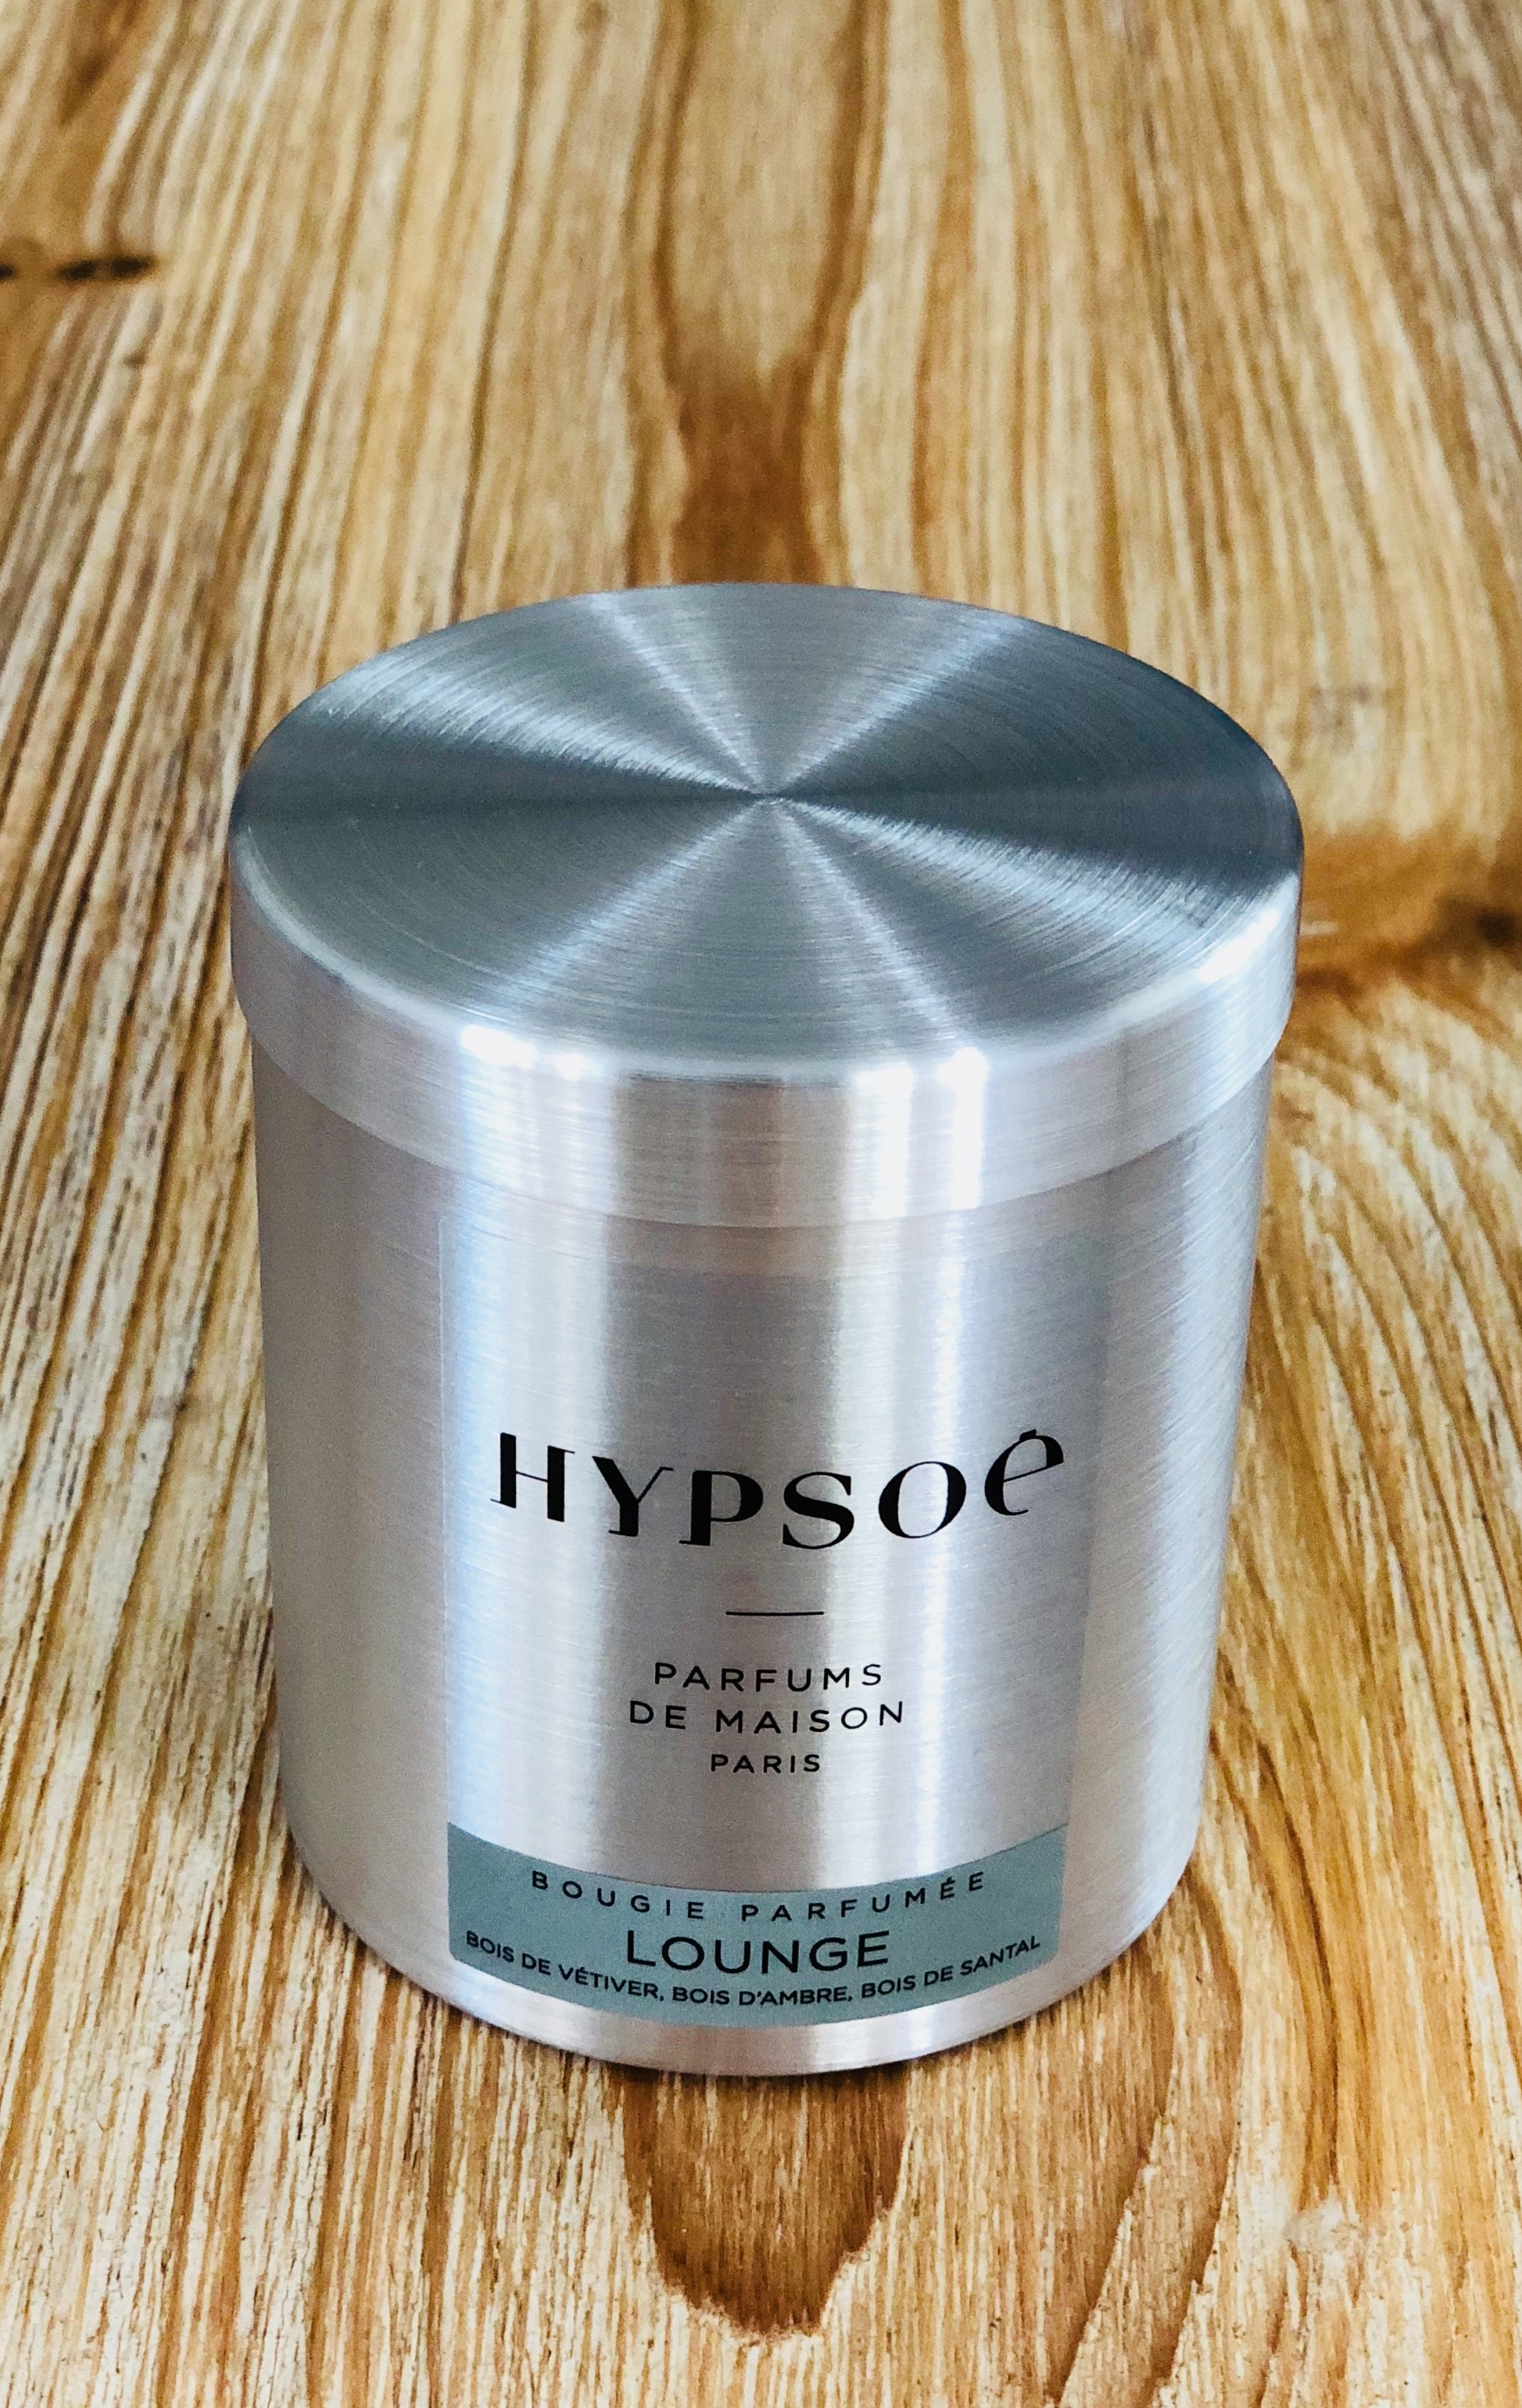 Hypsoé - Bougie parfumée - Lounge